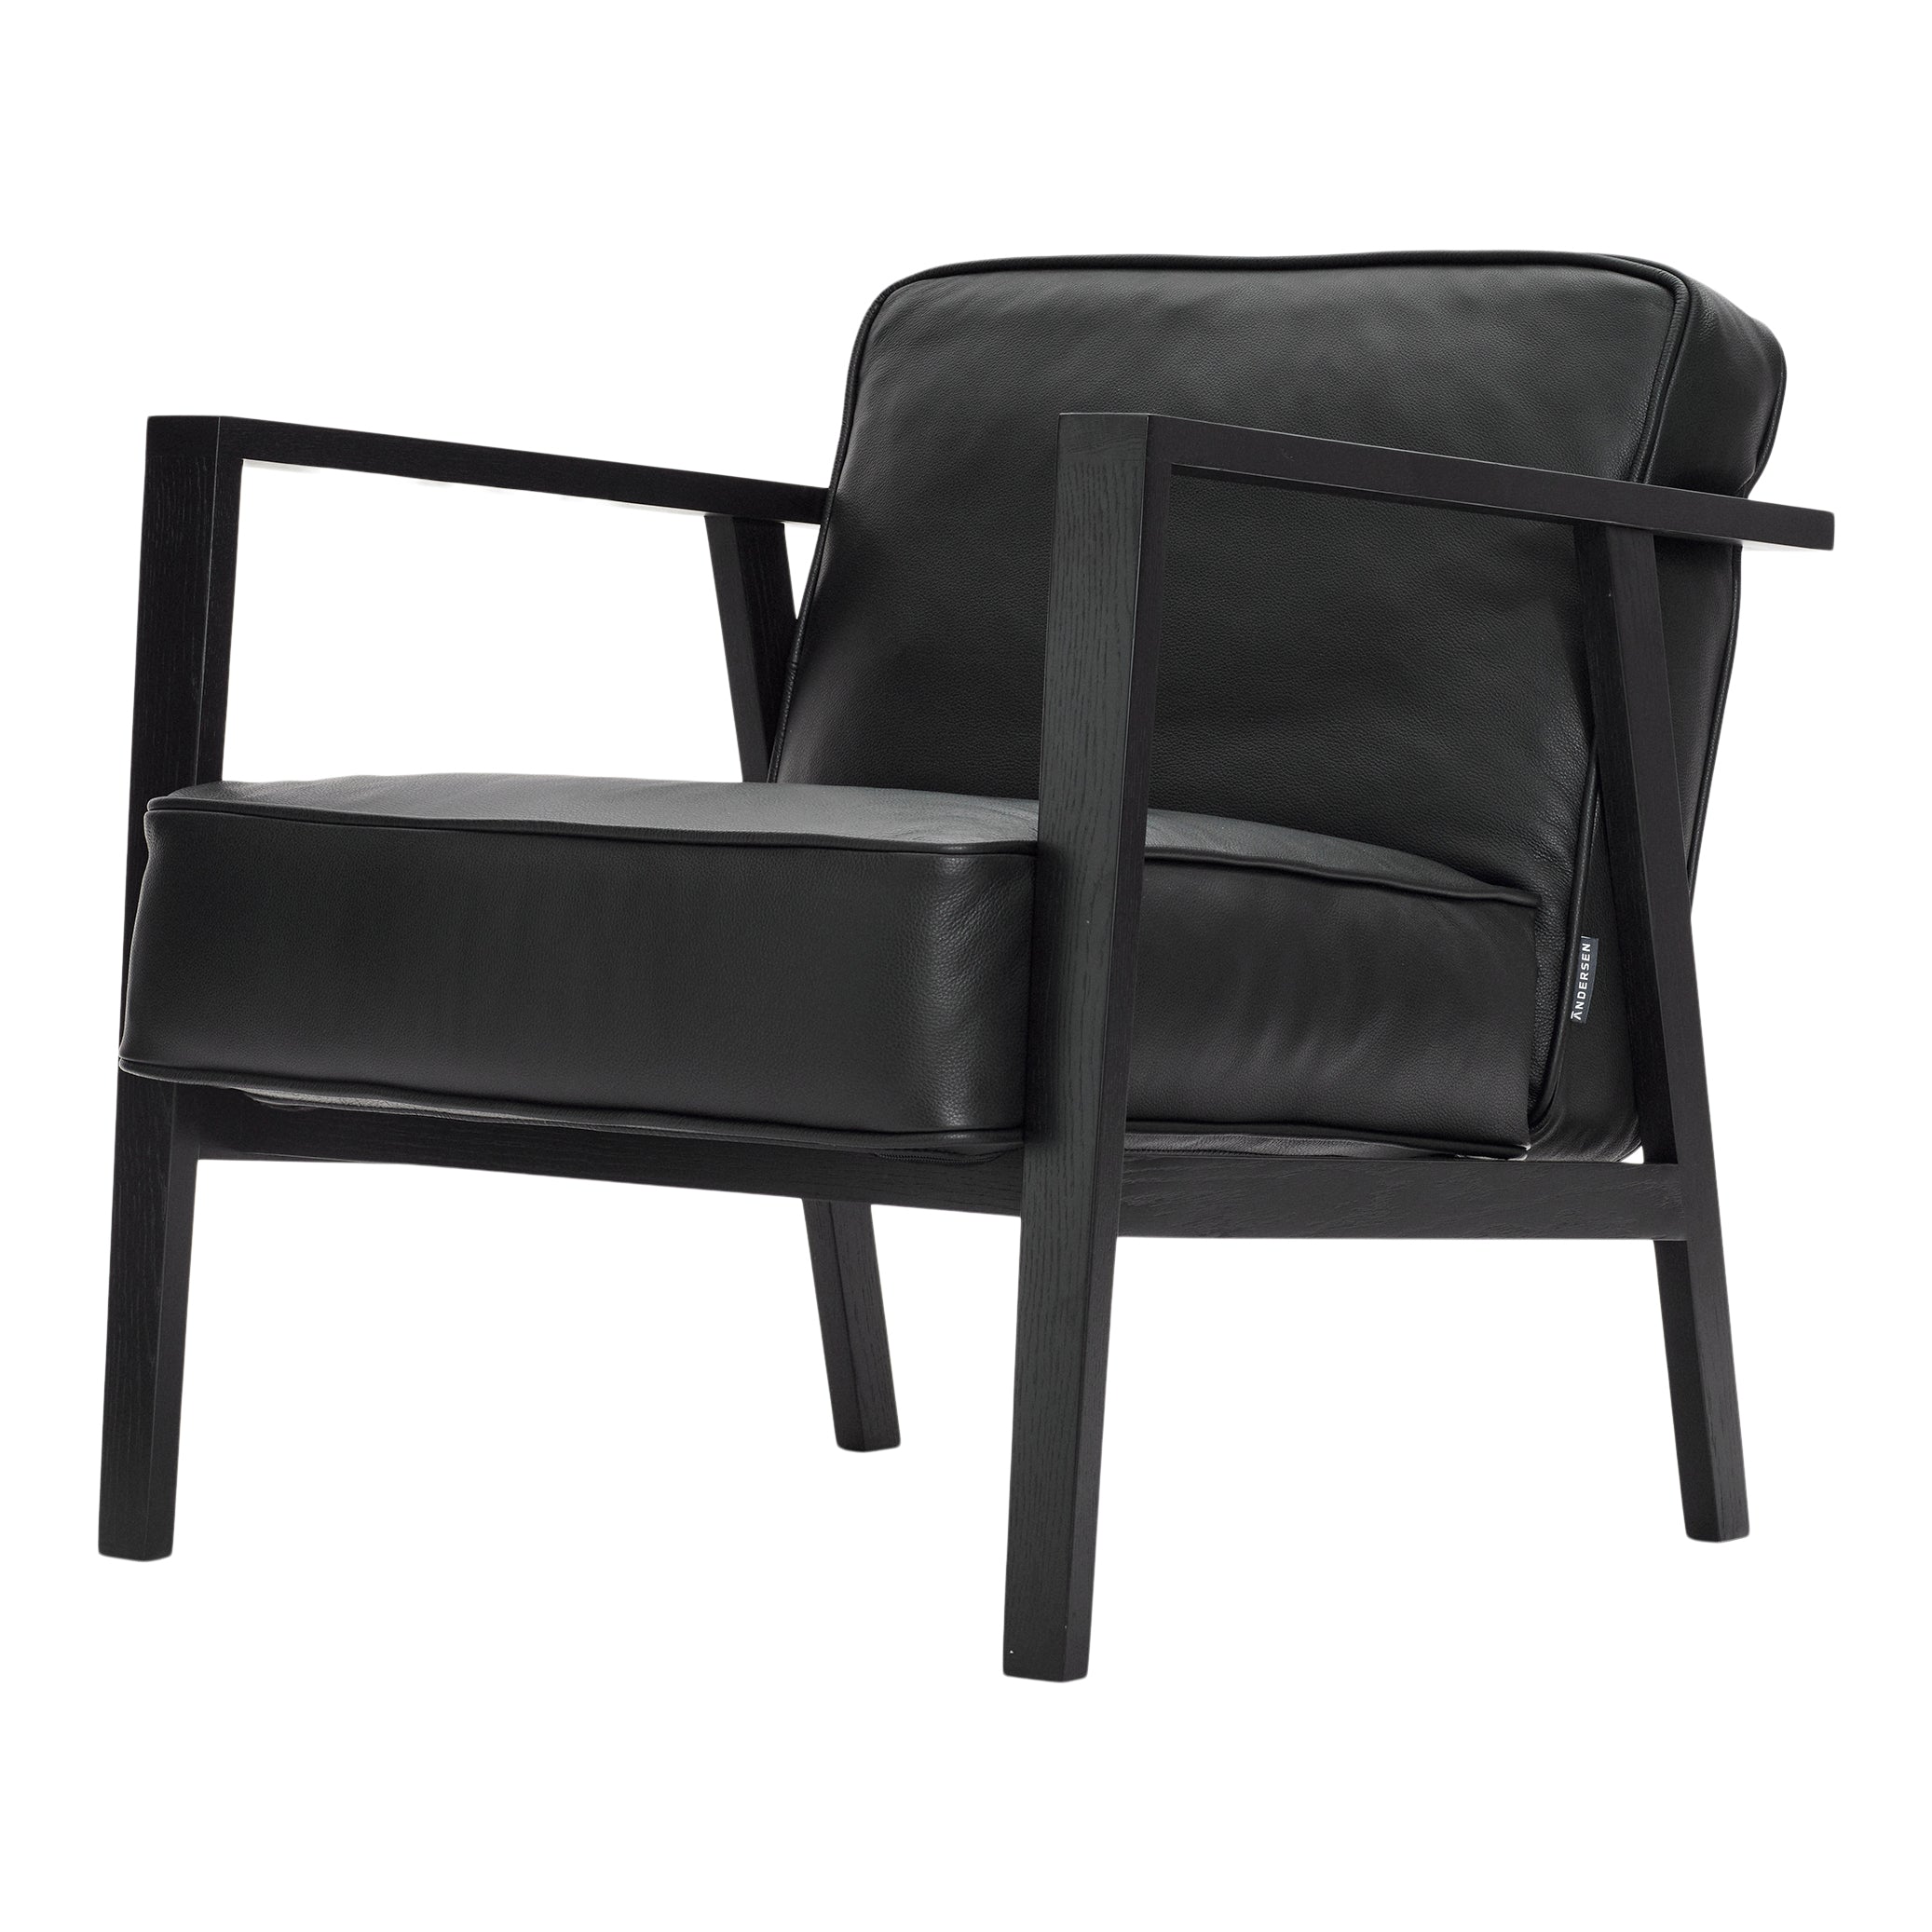 Móveis Andersen - Cadeira de lounge LC1 - couro preto/moldura em preto lacado